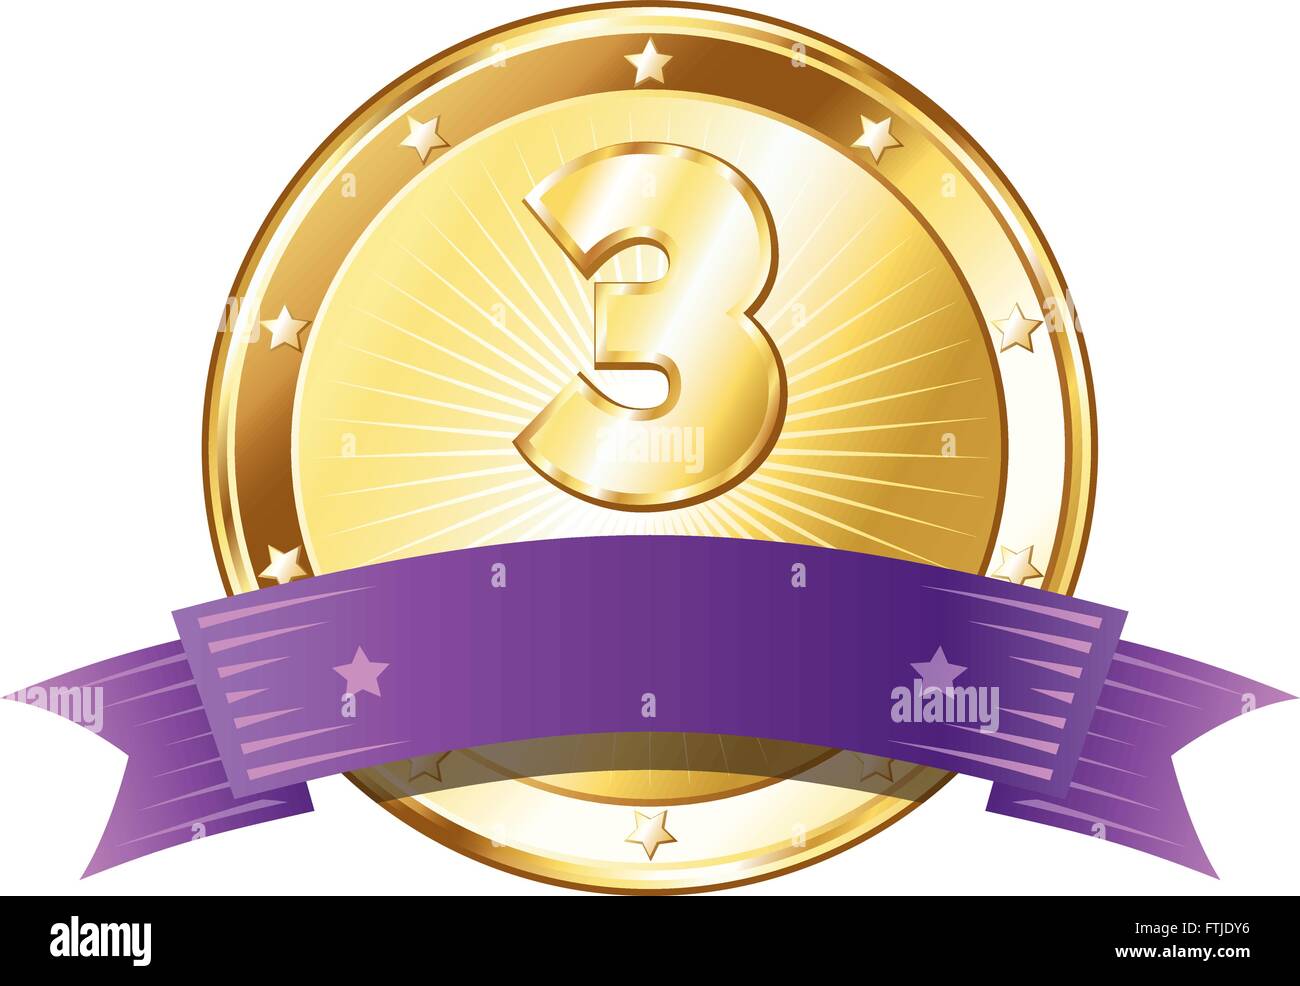 Runde Kreis geformt Metallabzeichen / Gütesiegel in Gold aussehen mit einer lila Schleife und die Nummer drei. Stock Vektor